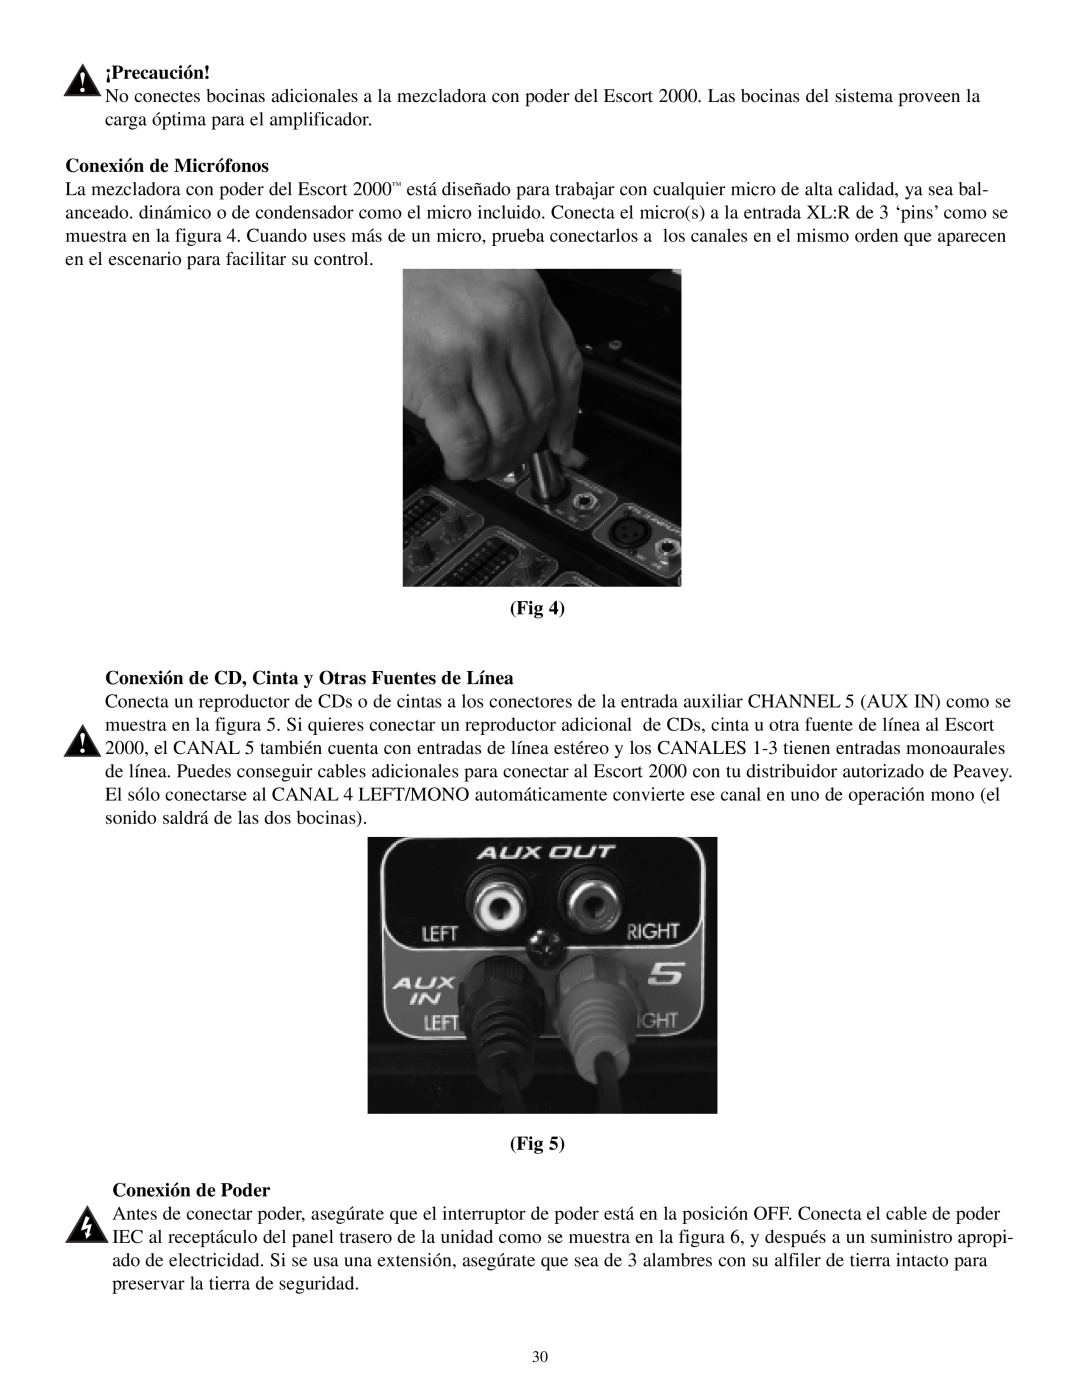 Musica 2000 manual ¡Precaución, Conexión de Micrófonos, Conexión de CD, Cinta y Otras Fuentes de Línea, Conexión de Poder 